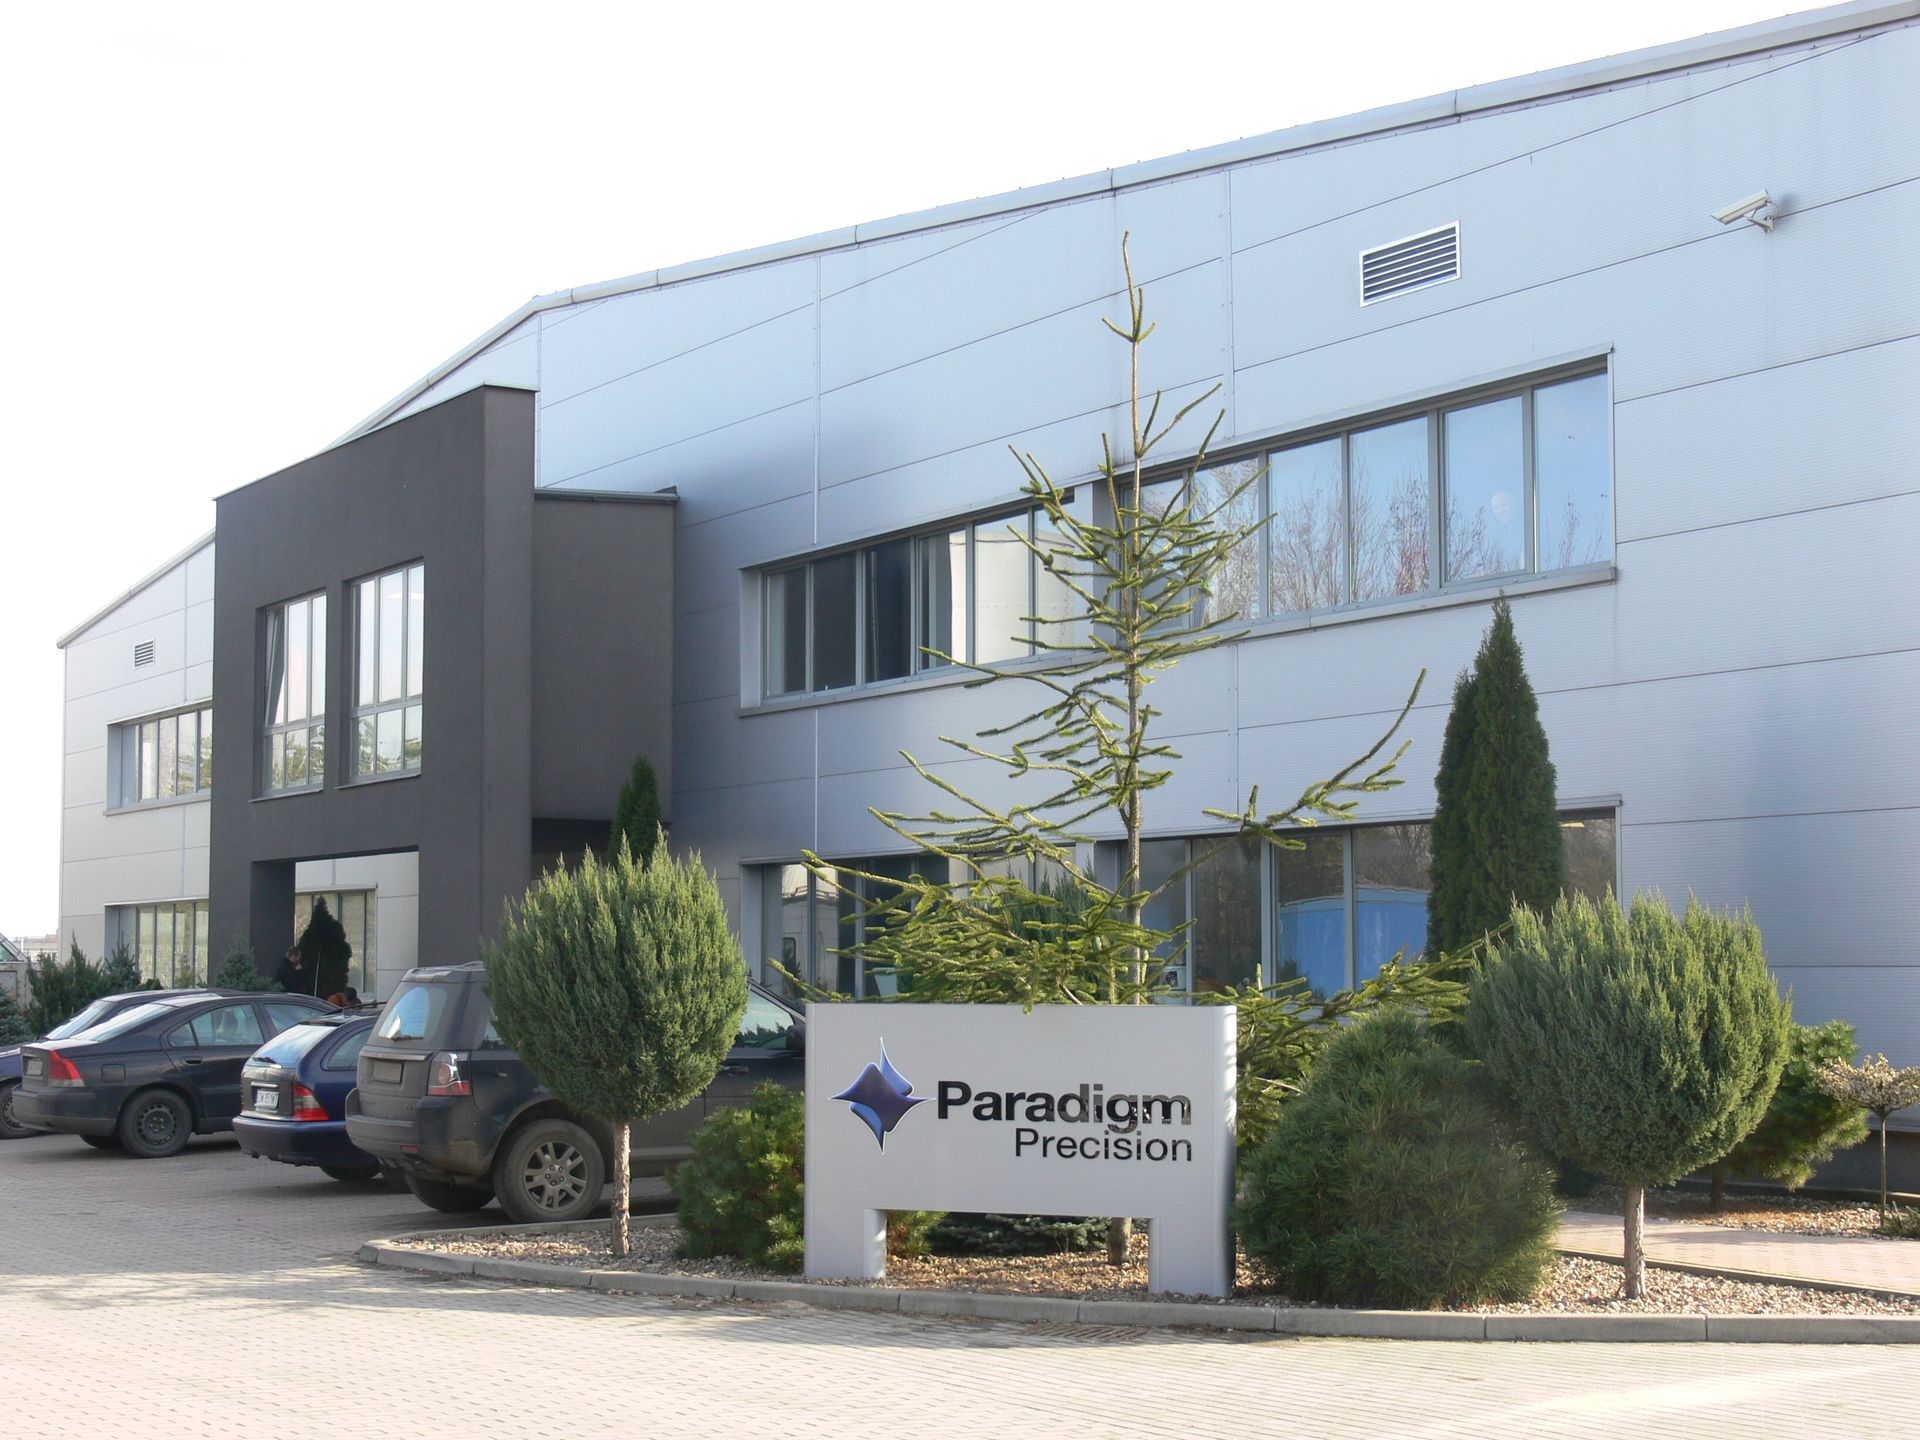  Paradigm Precision rozwija swoją fabrykę pod Wrocławiem